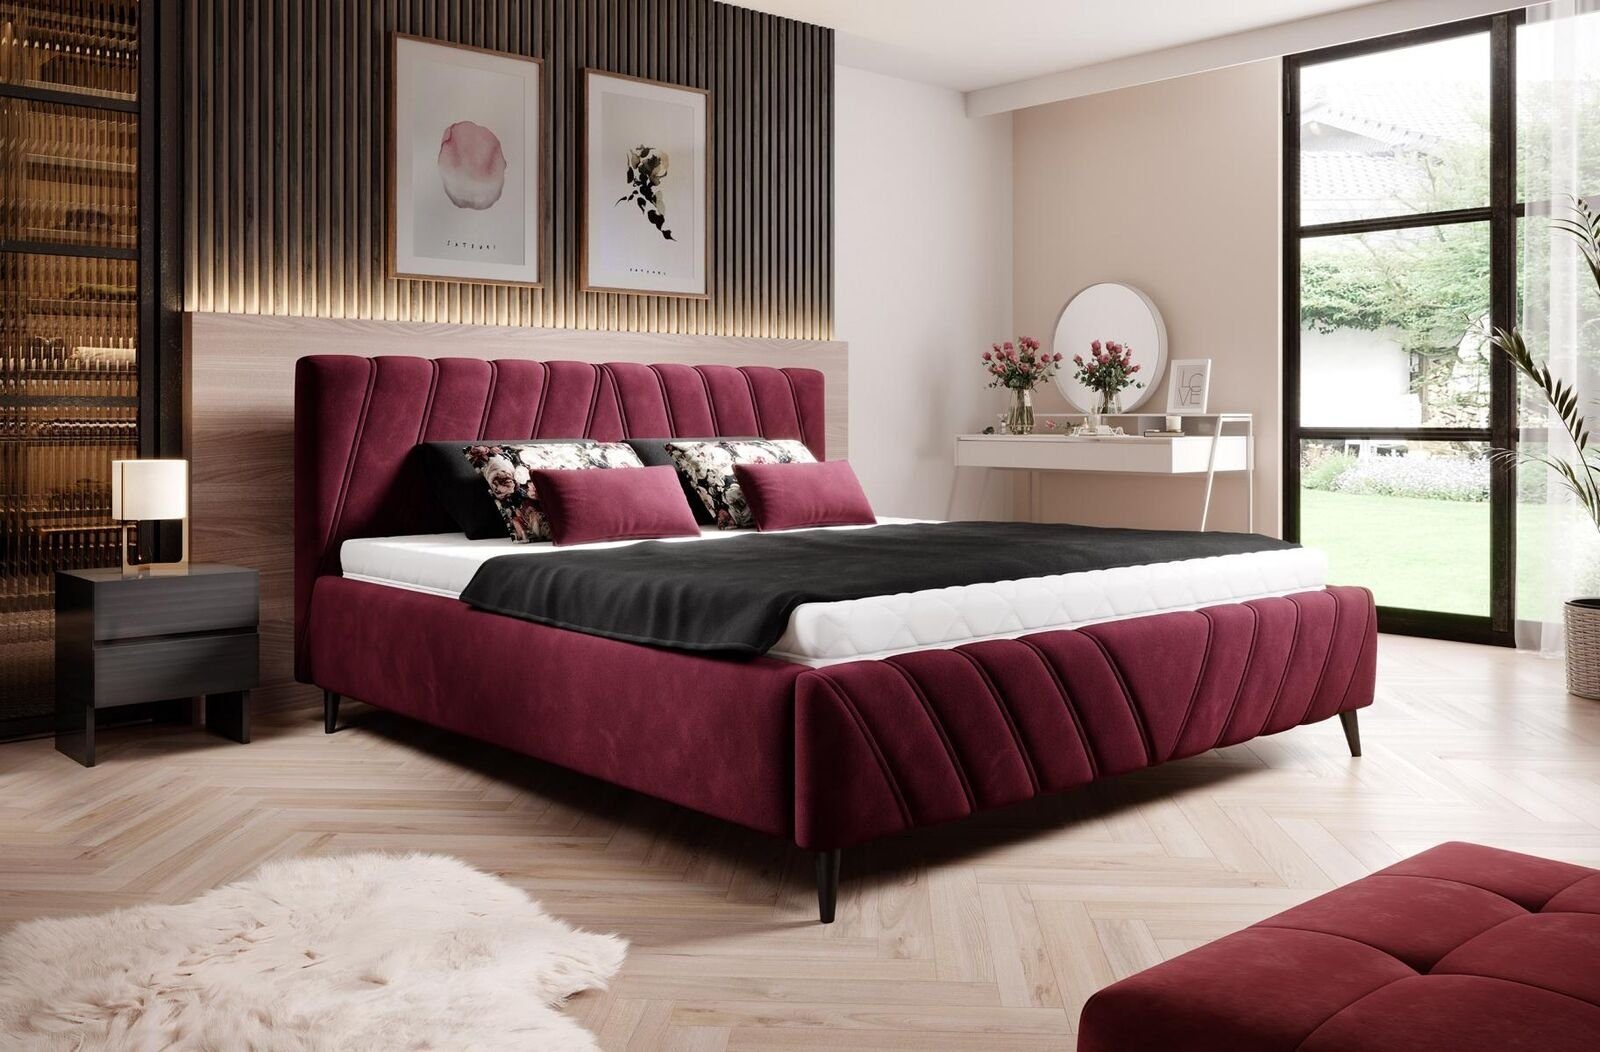 JVmoebel Bett, Luxus Bett Design Textil Betten Polster Hotel 180x200cm